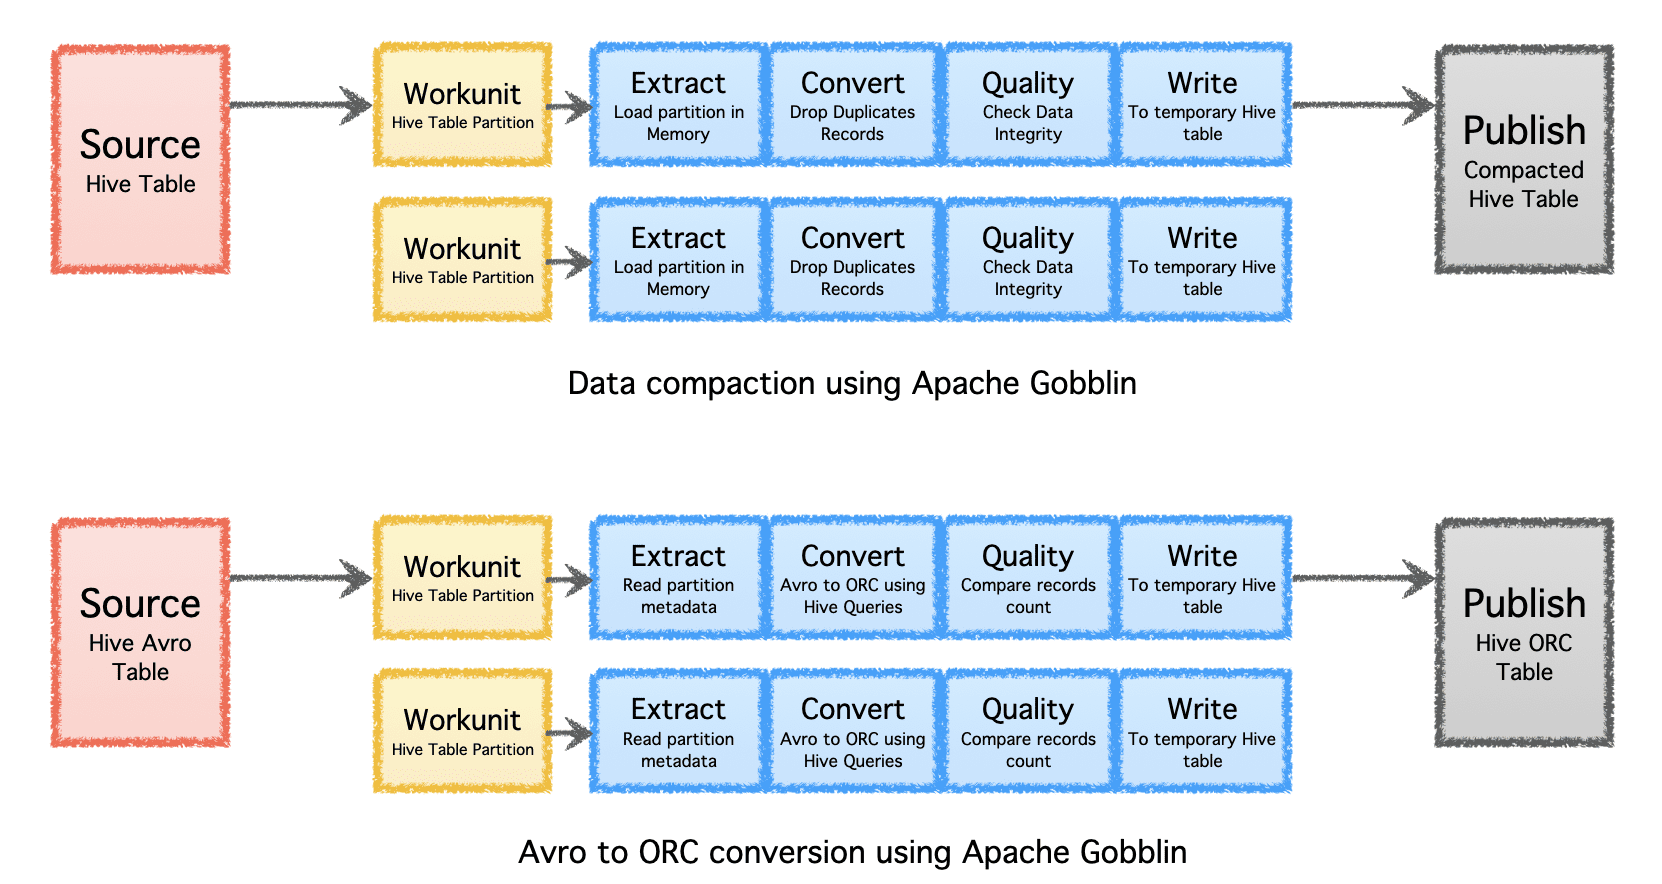 שינוי קנה מידה של ניהול נתונים באמצעות Apache Gobblin